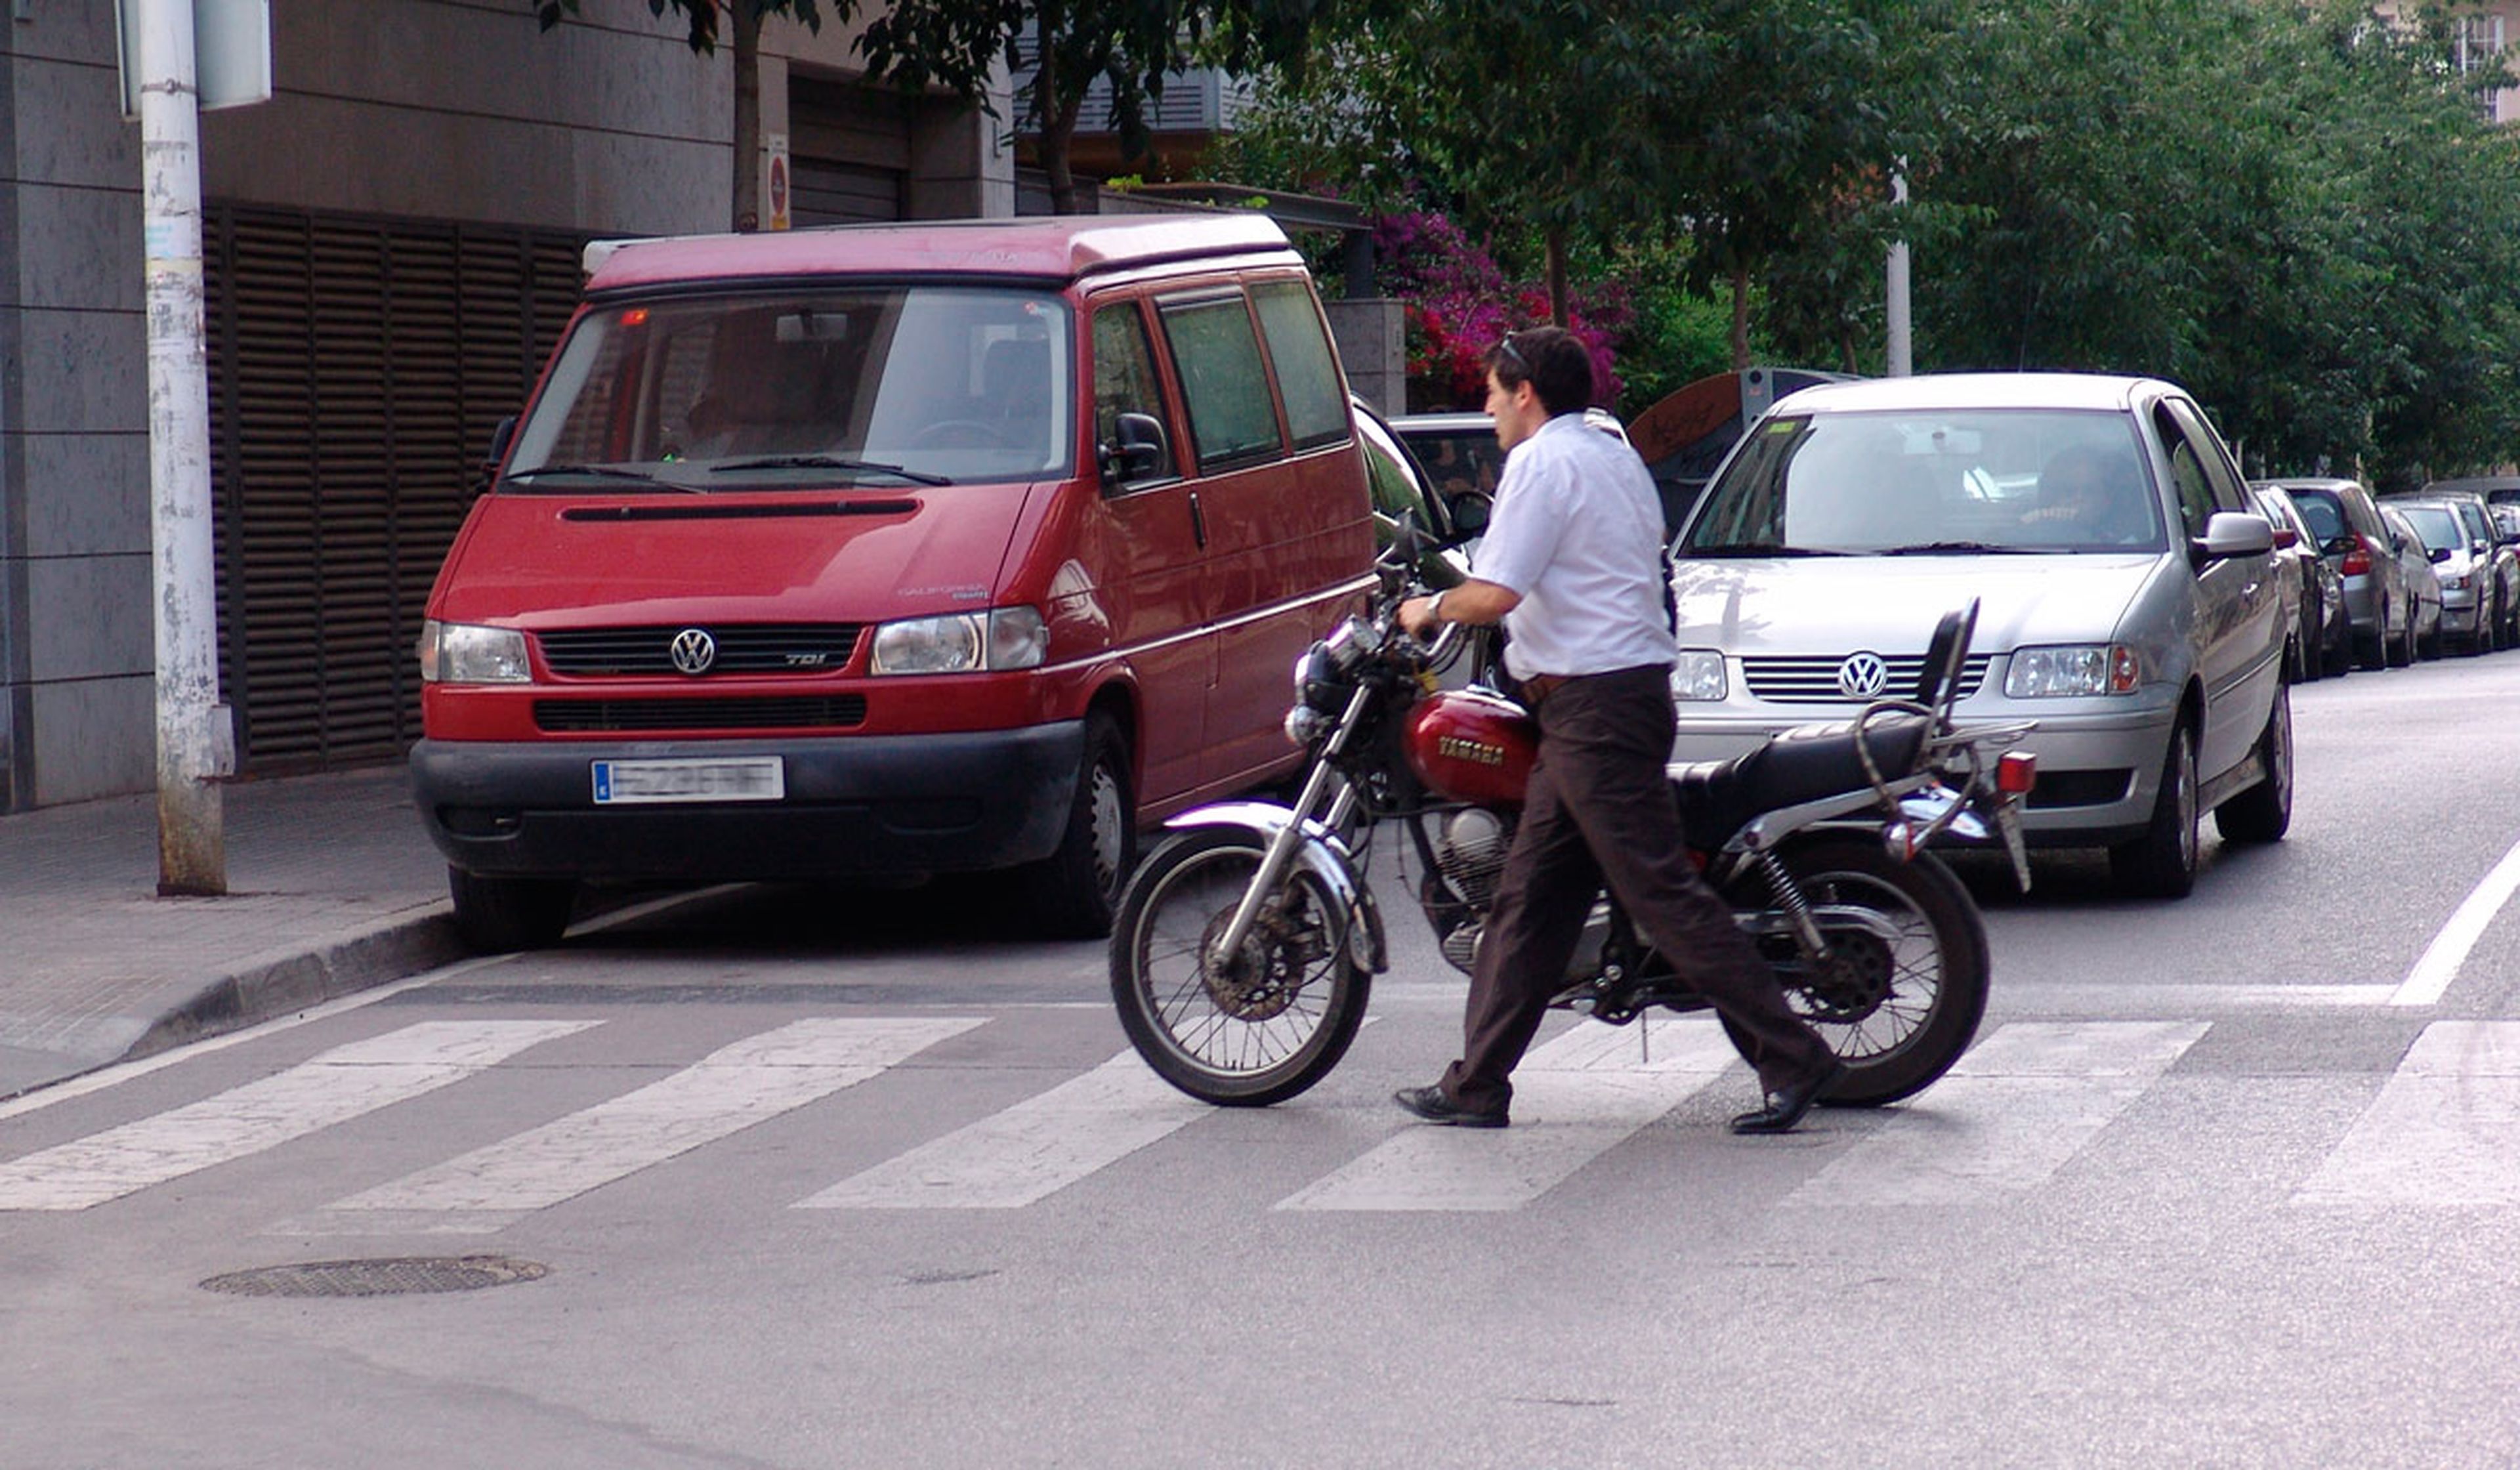 Por conducir una moto sin casco, la multa son 200 euros y tres puntos del carné.